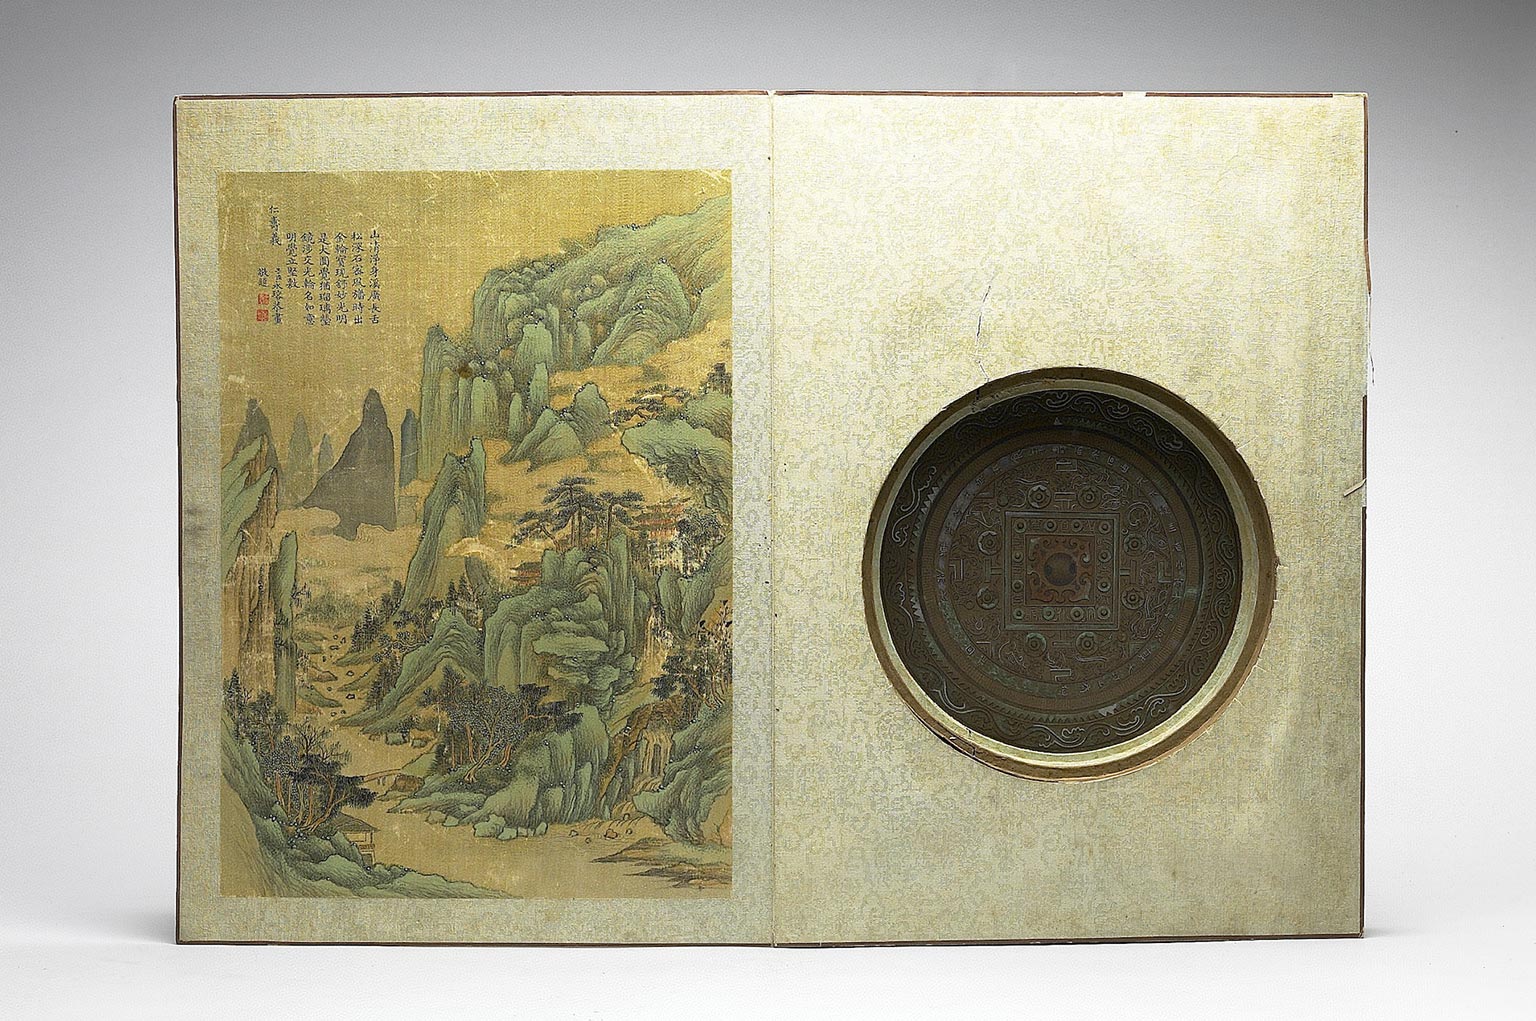 Mirror Case Set Xiqing xujian yibian (Vol. 1)